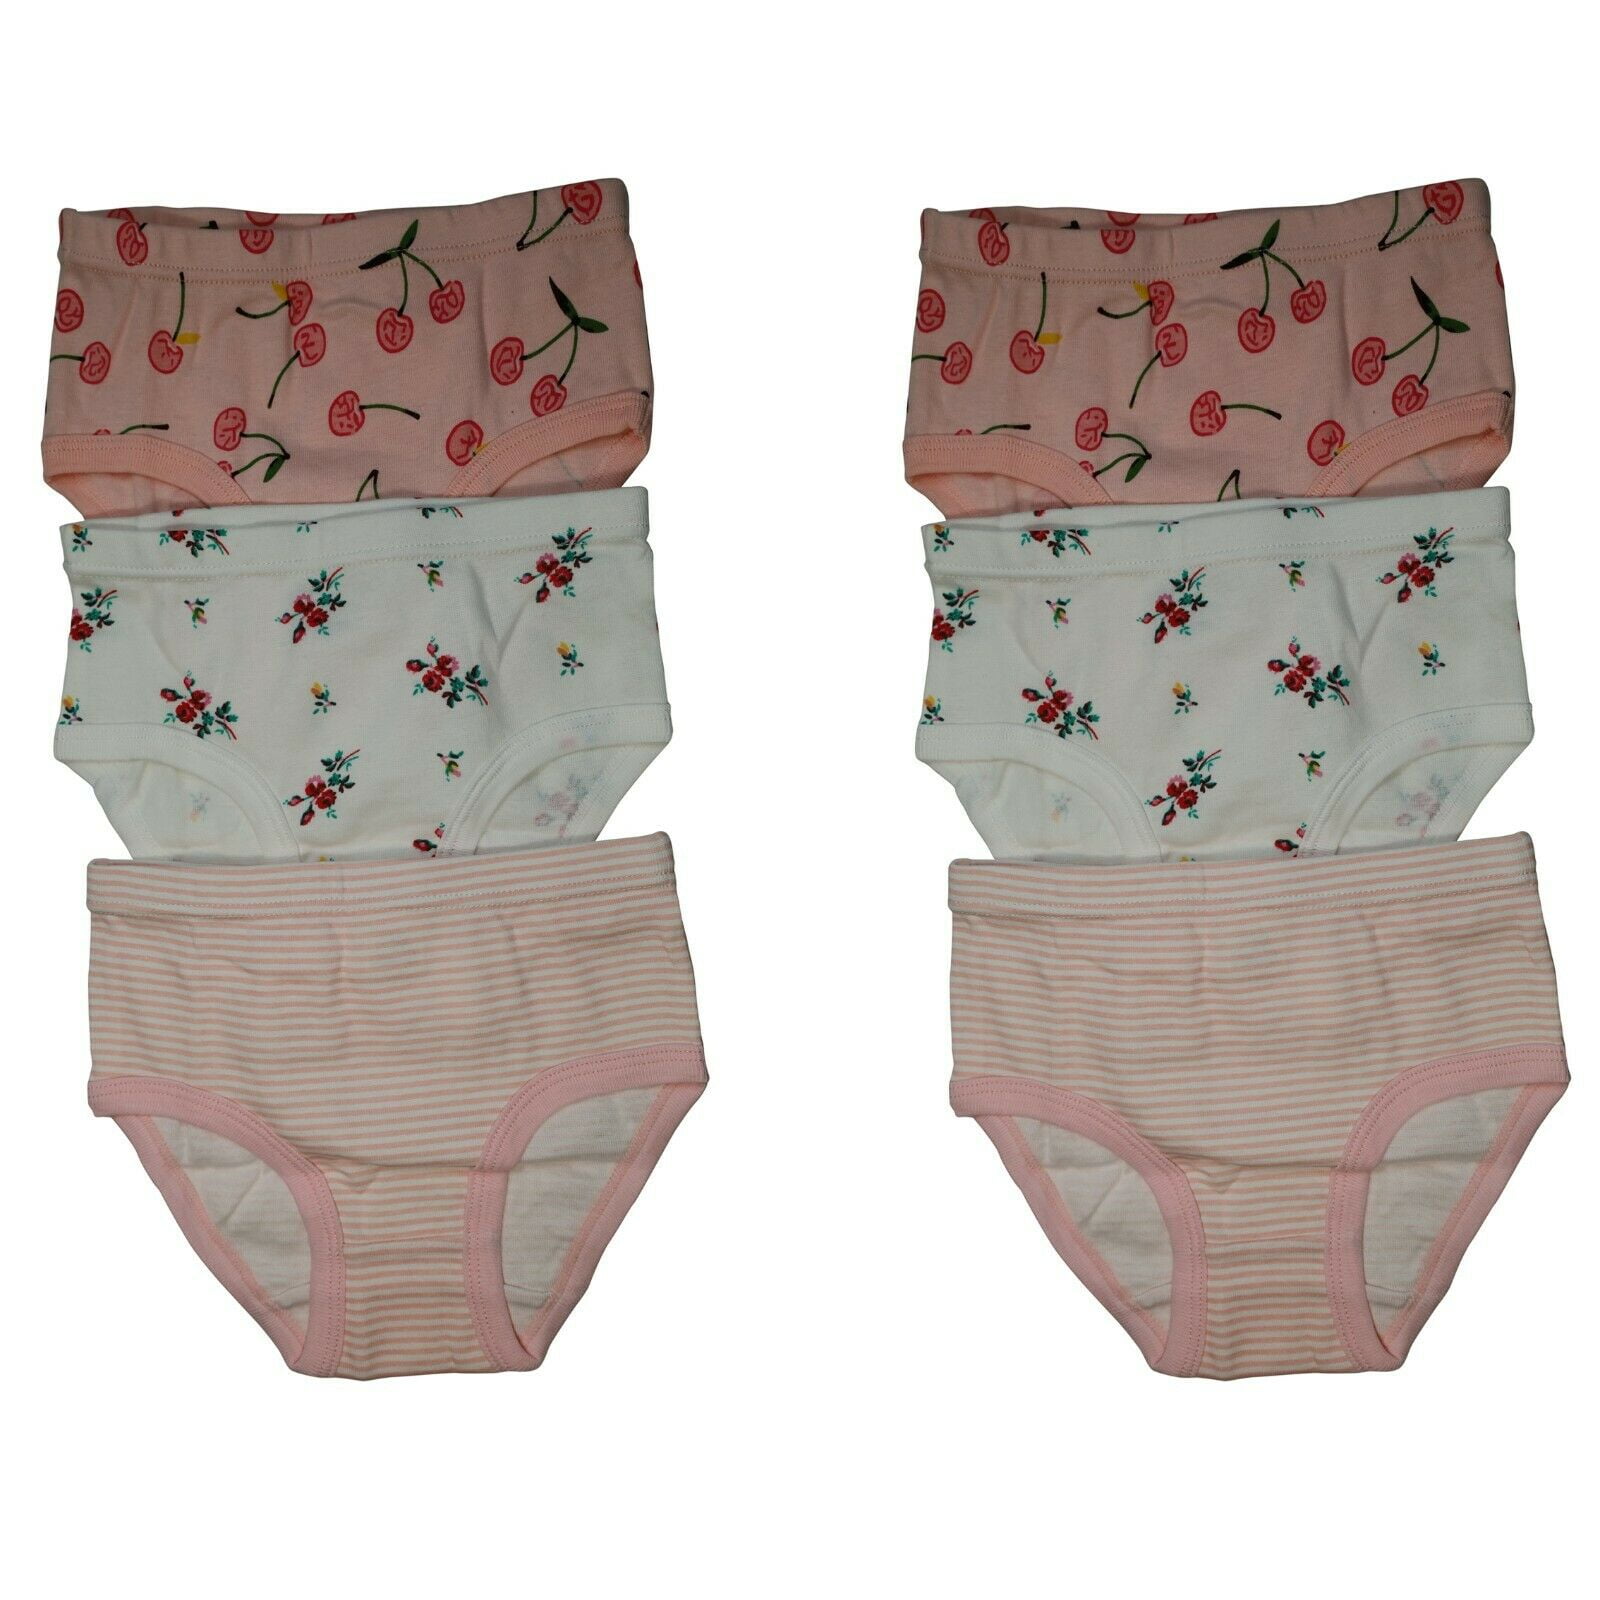 B&Q 6 Packs Toddler Little Girls Kids Underwear Cotton Briefs Underpants Size  2T 3T 4T 5T 6T 7T 